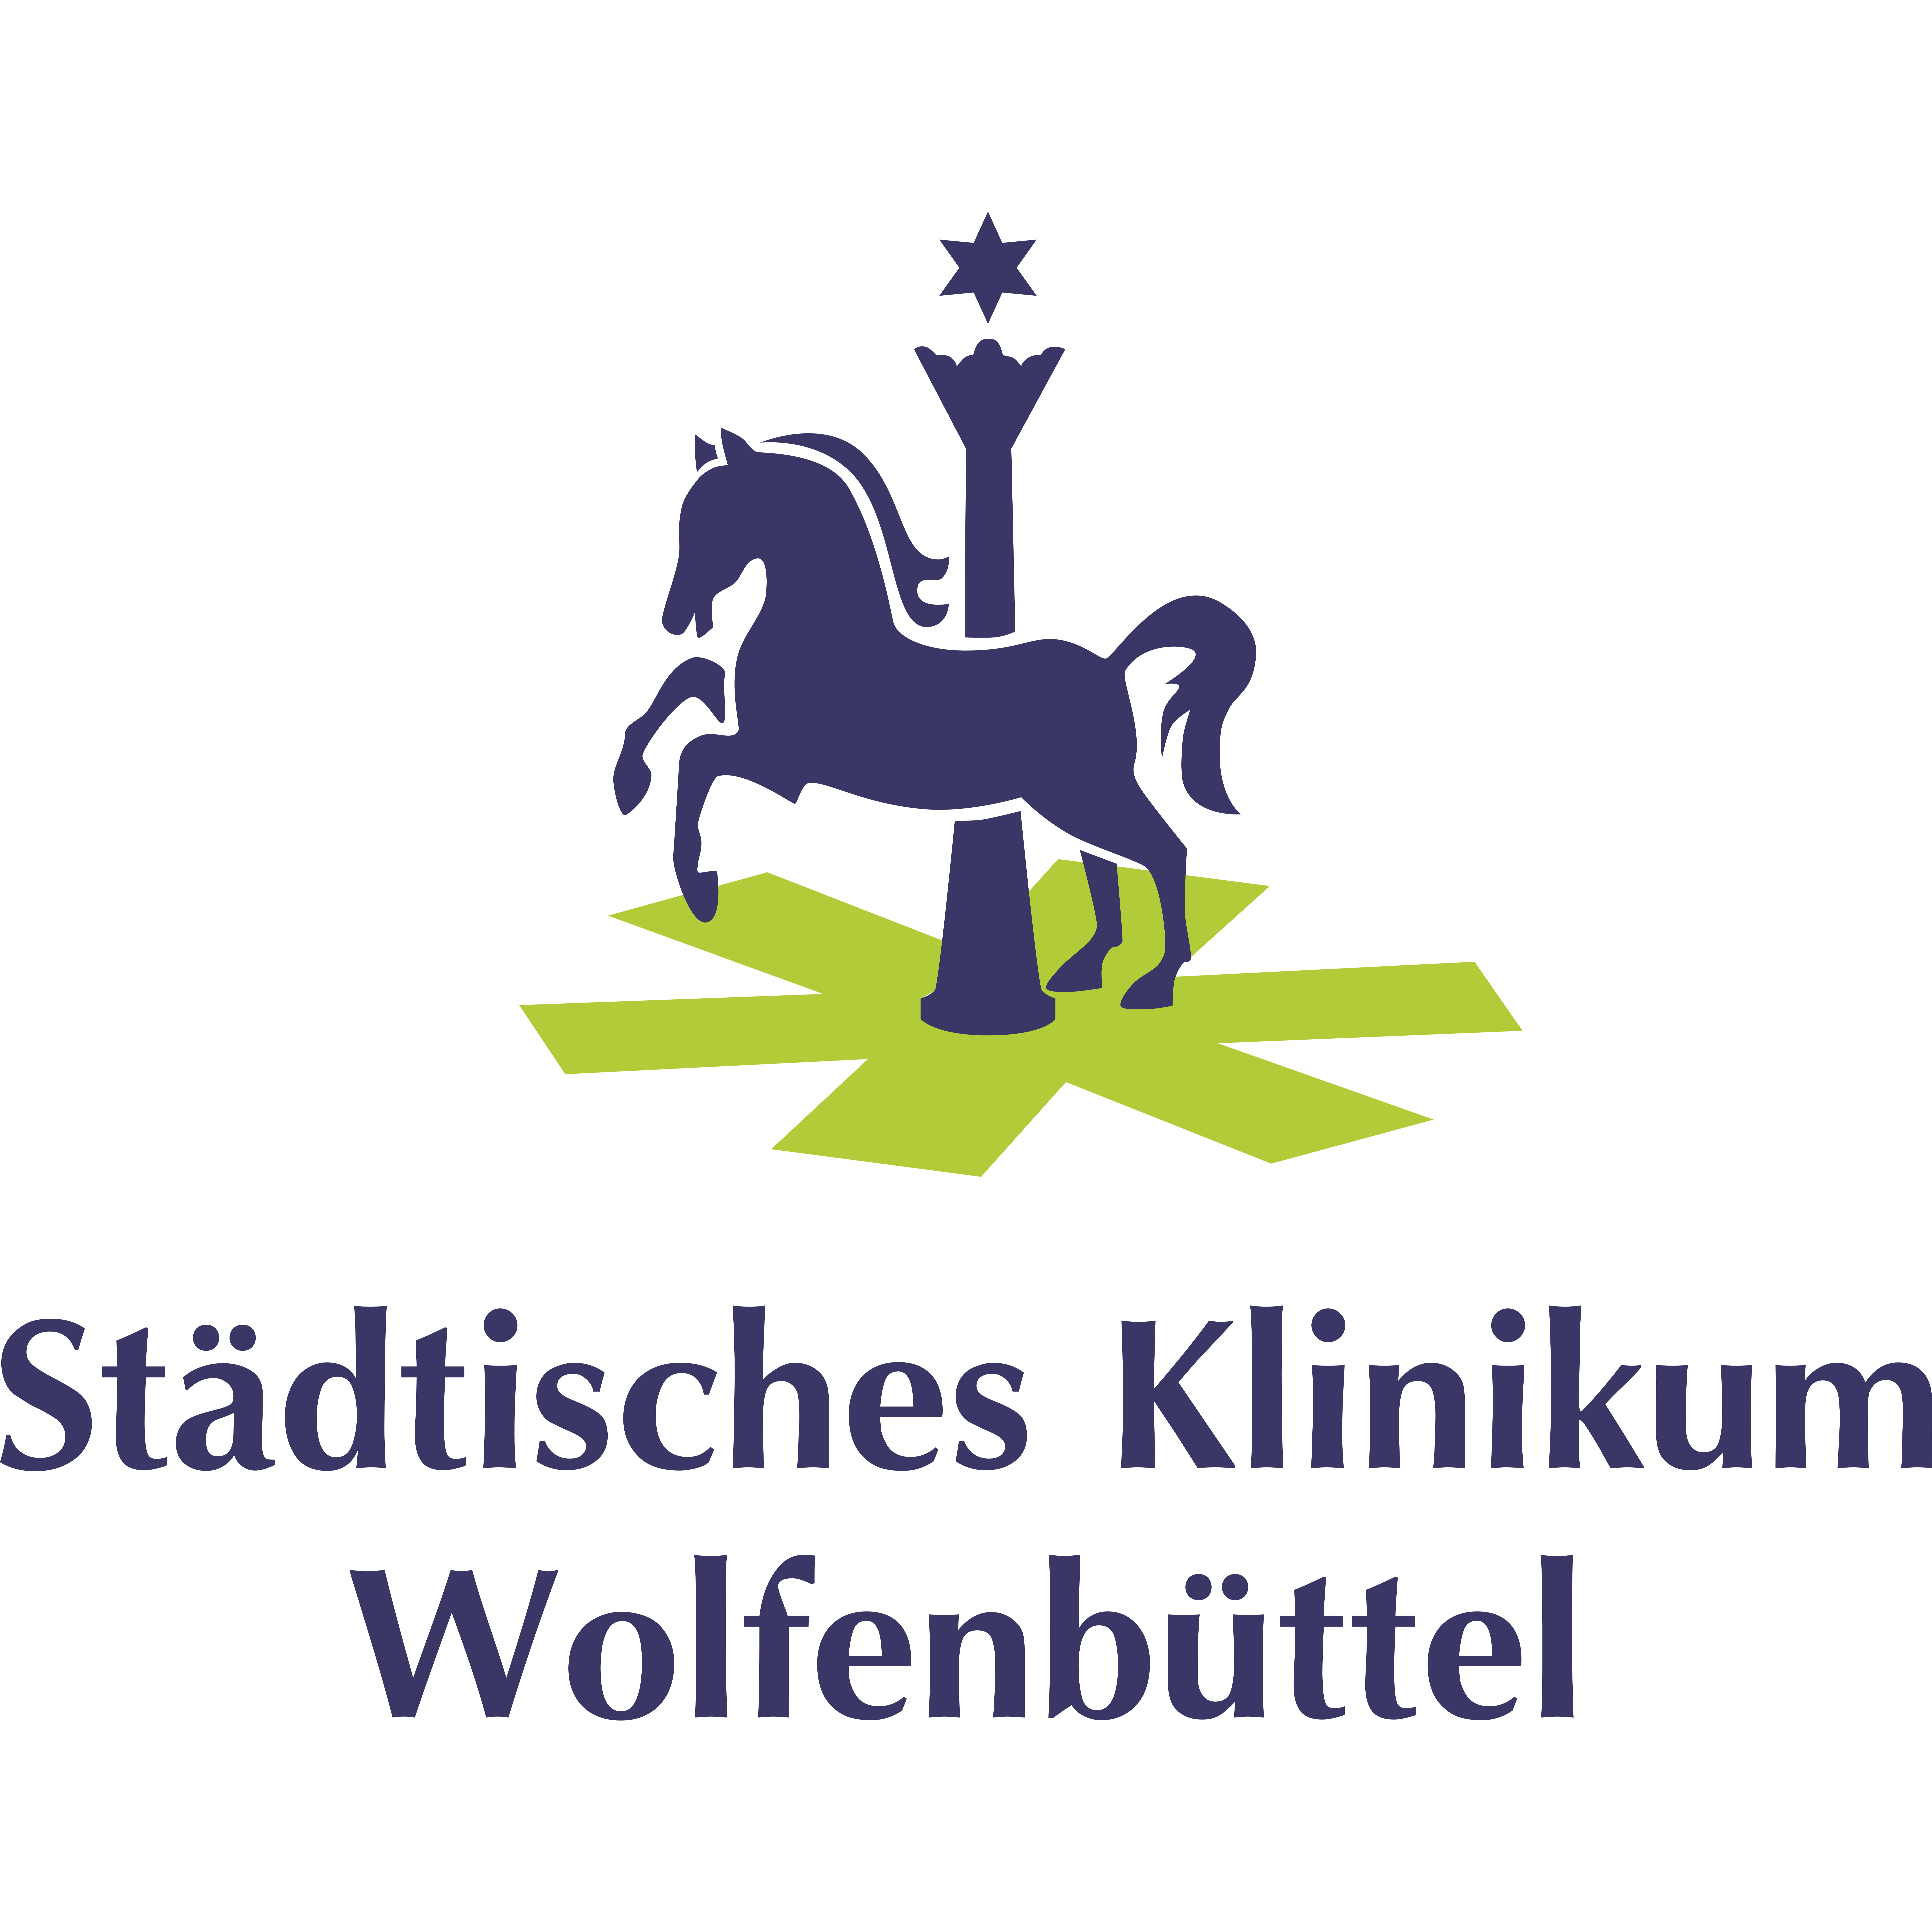 Städtisches Klinikum Wolfenbüttel gGmbH Logo